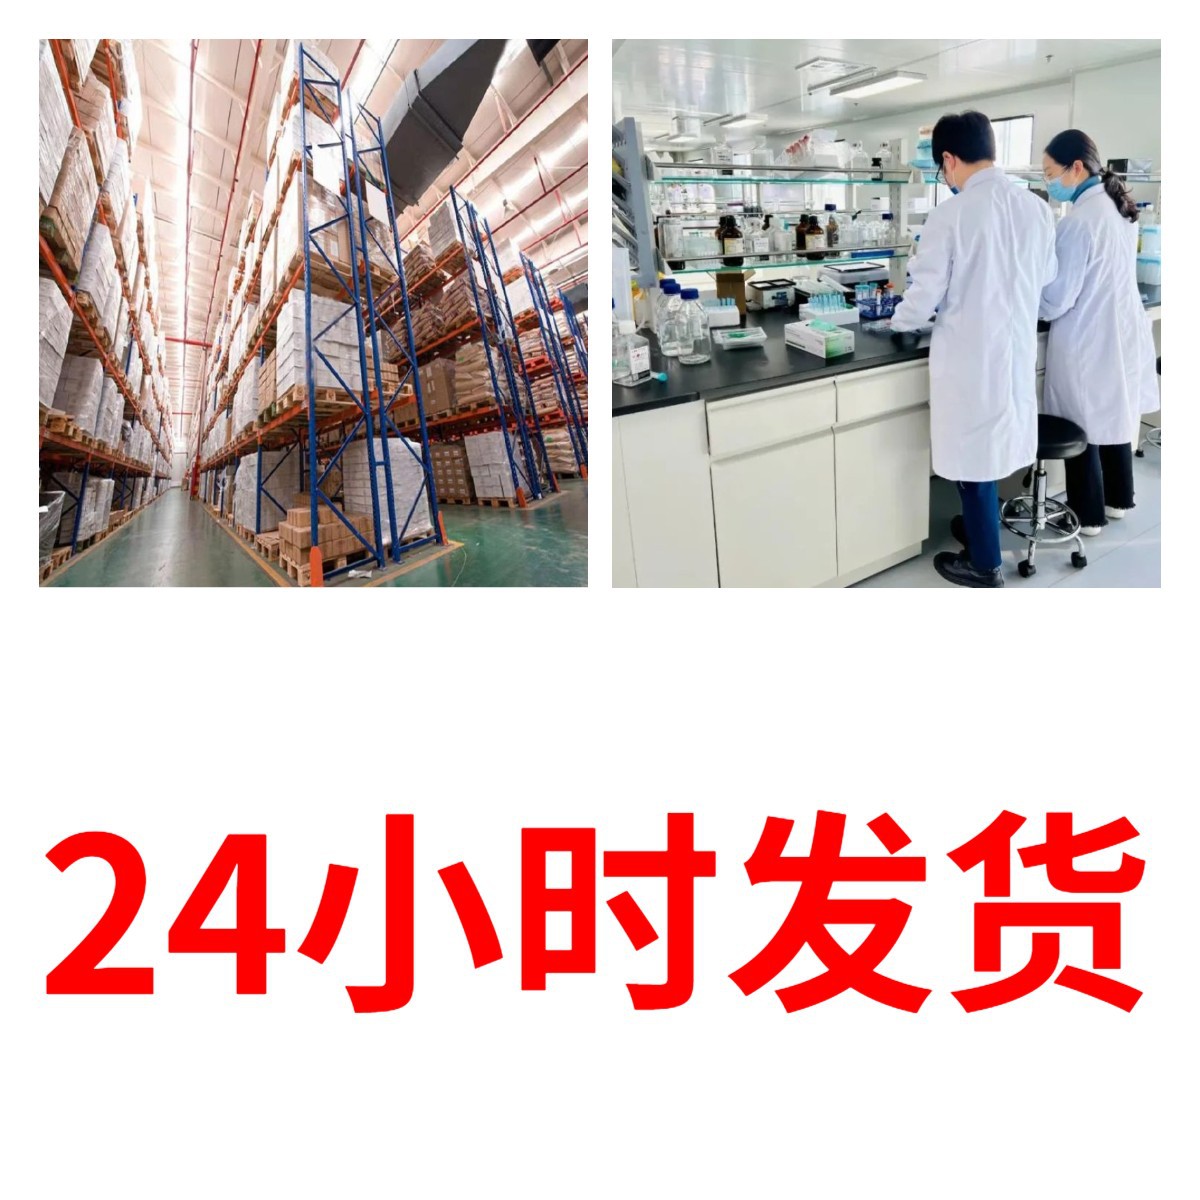 硫酸铟 中外合资品种齐福建含运费24小时服务山东江苏广东上海